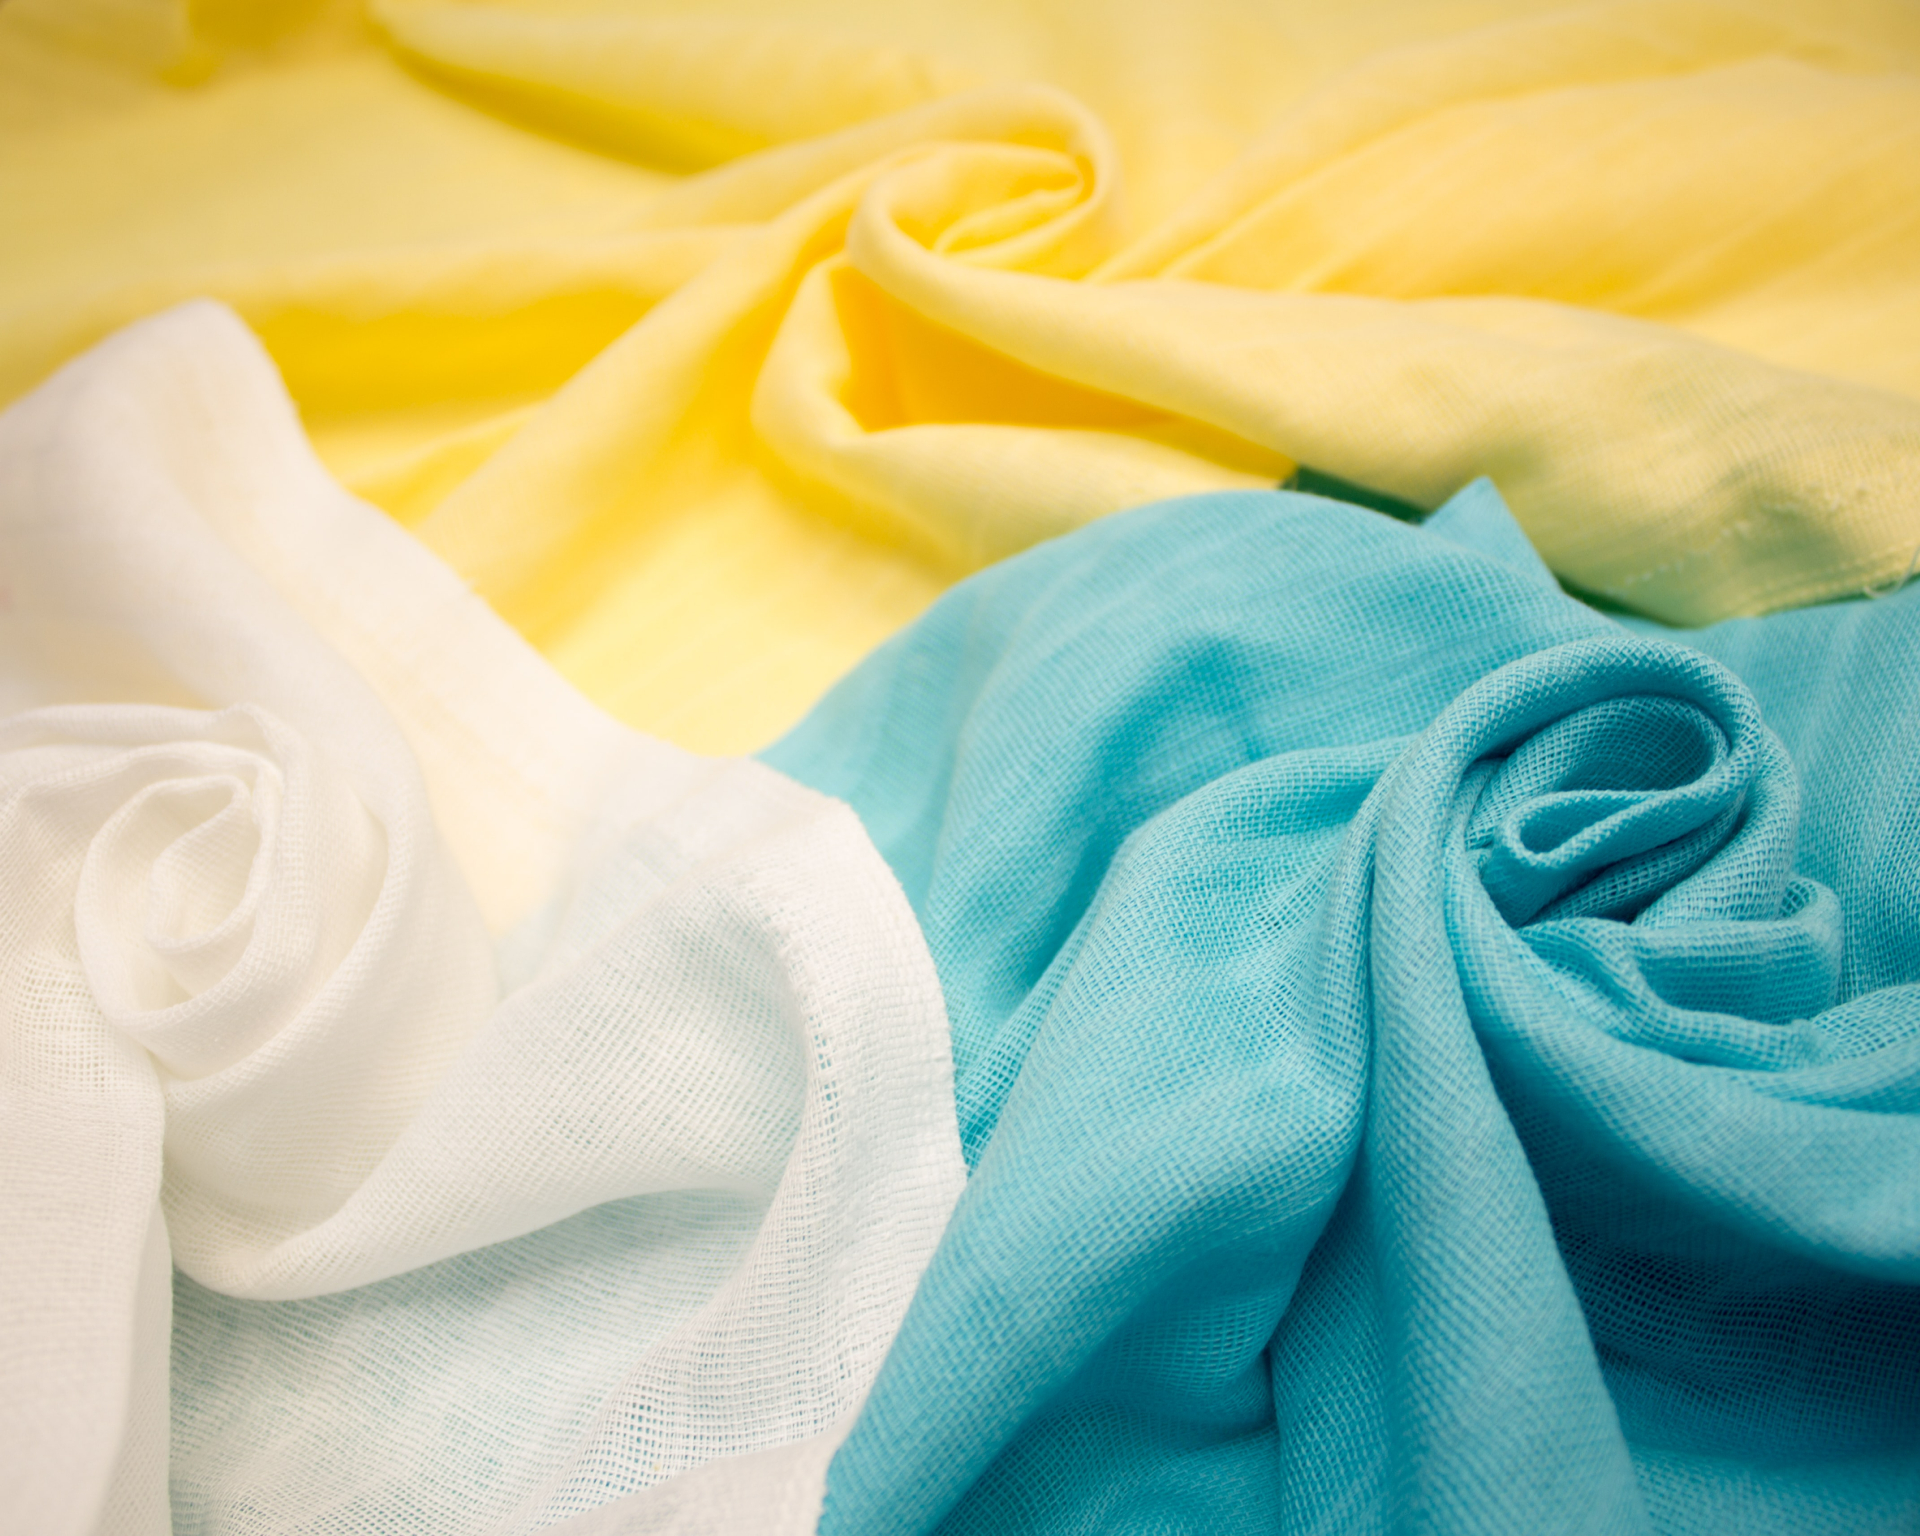 Натуральные ткани не очень высокой плотности, такие как шелк или лен &mdash; оптимальный компромисс для балдахина над кроватью